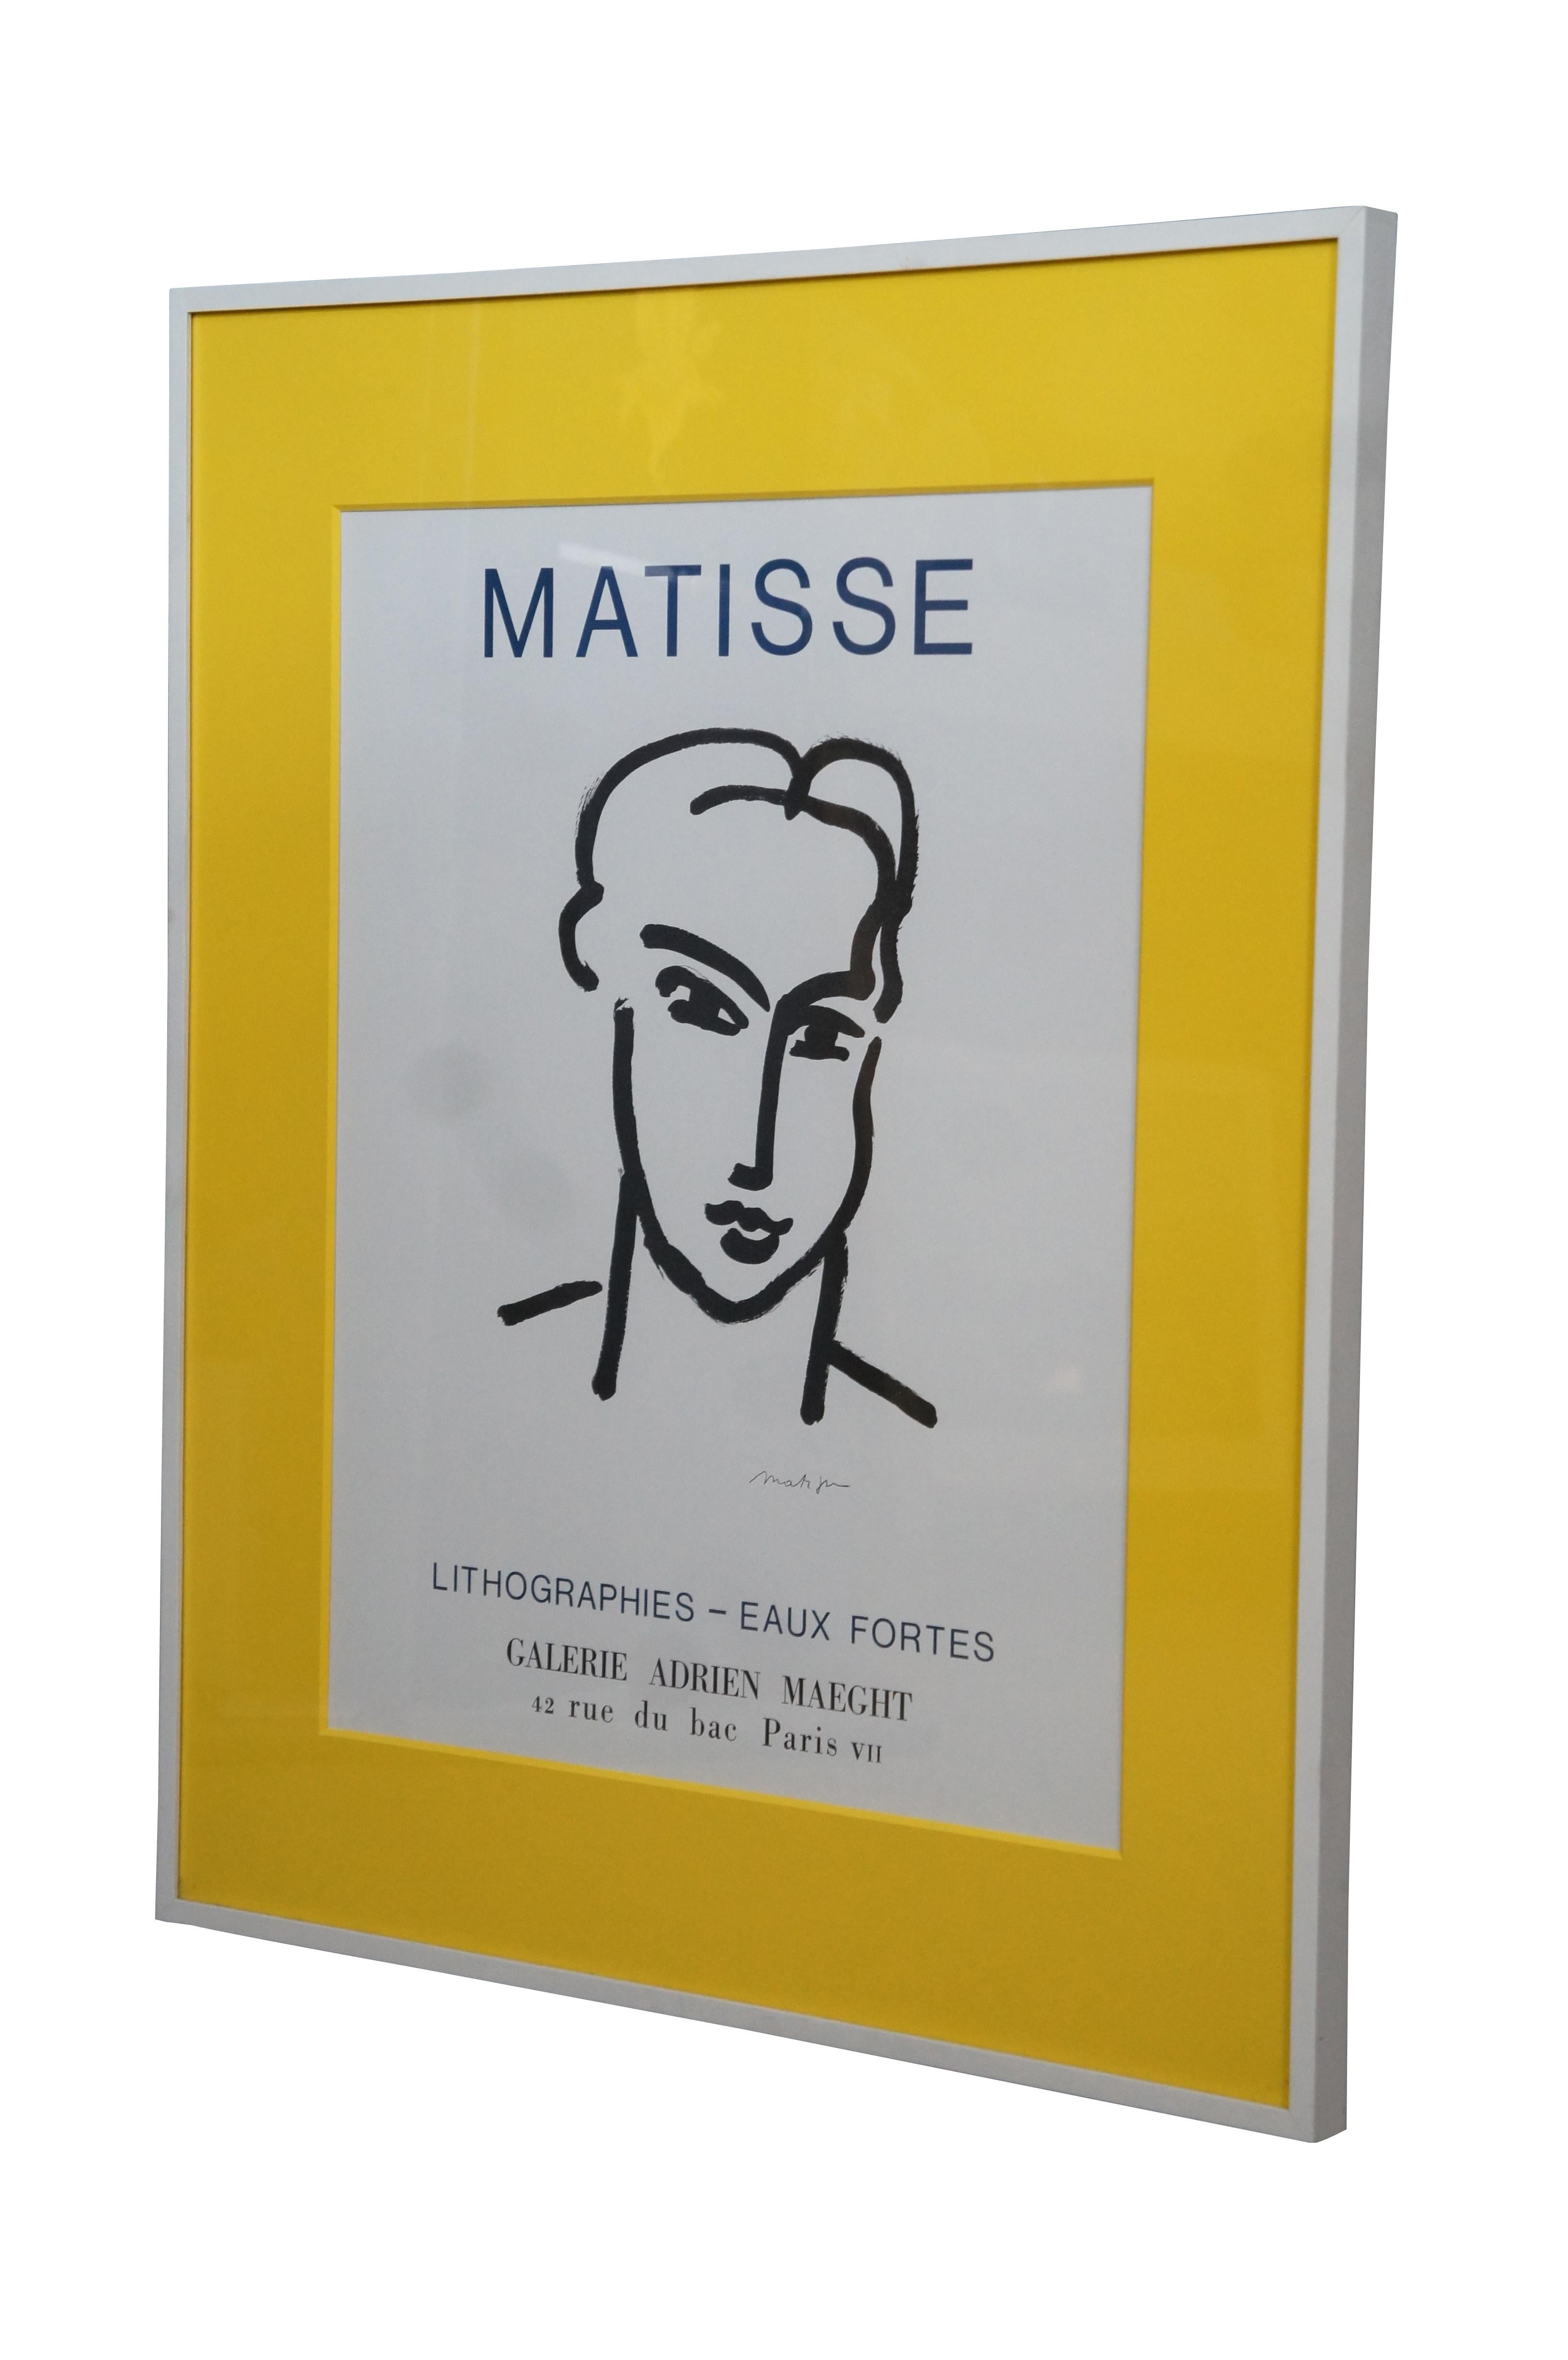 Affiche encadrée annonçant l'exposition de 1964 de Matisse - Lithographies - Eux Fortes à la Galerie Adrien Maeght, présentant Grande Tete de Katia. Encadré en blanc avec un passe-partout jaune vif.

